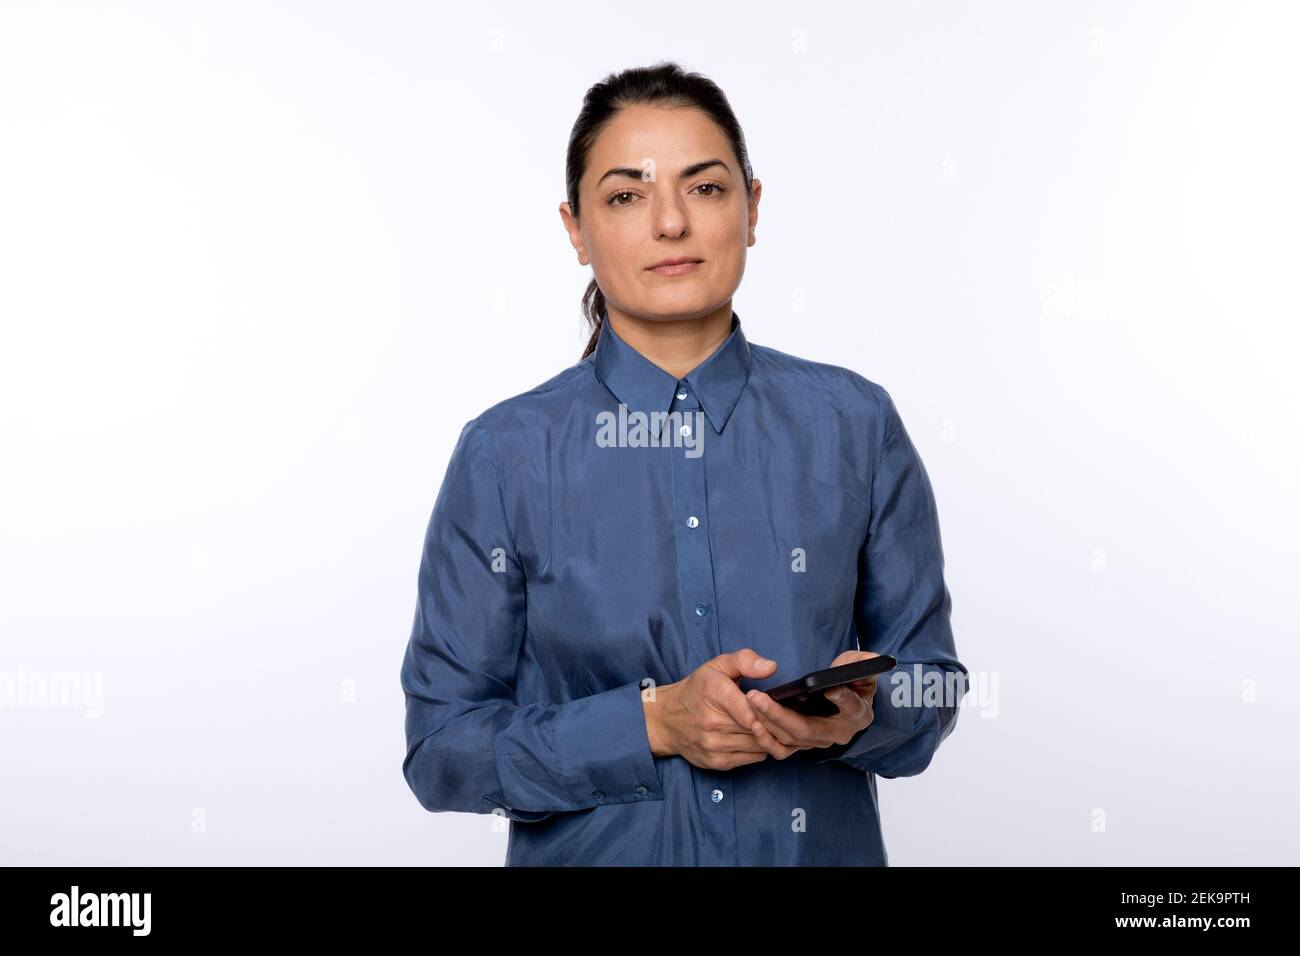 Frau in blauem Hemd mit Smartphone gegen Weiß stehend Hintergrund Stockfoto